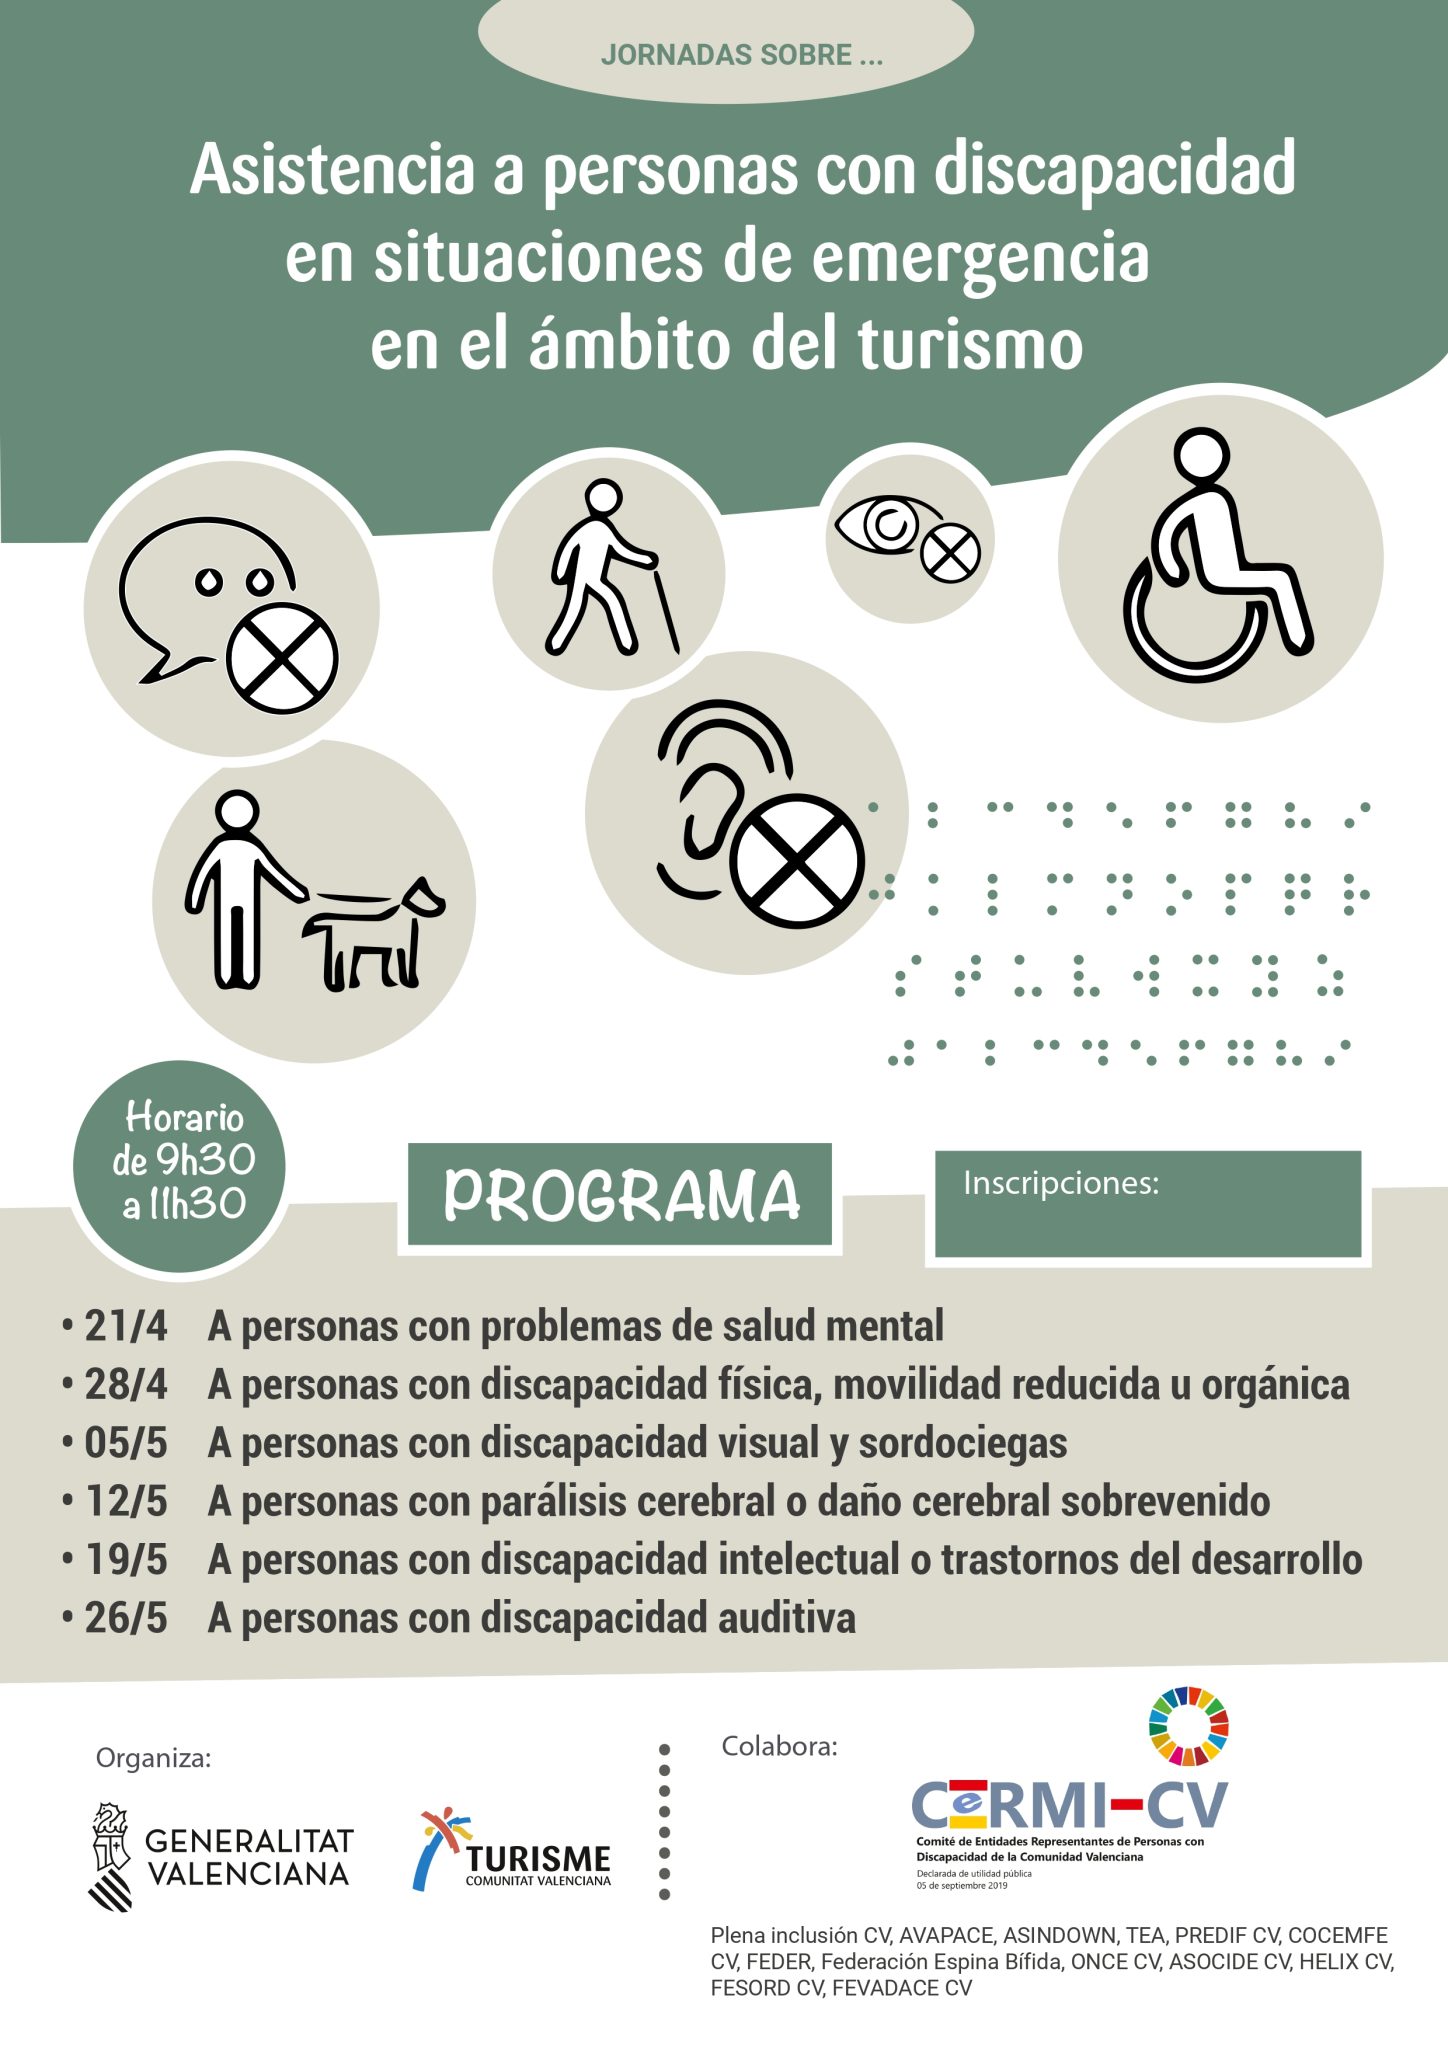 La Regidoria de Turisme anima als empresaris a ampliar la seua formació en assistència a la discapacitat en el turisme